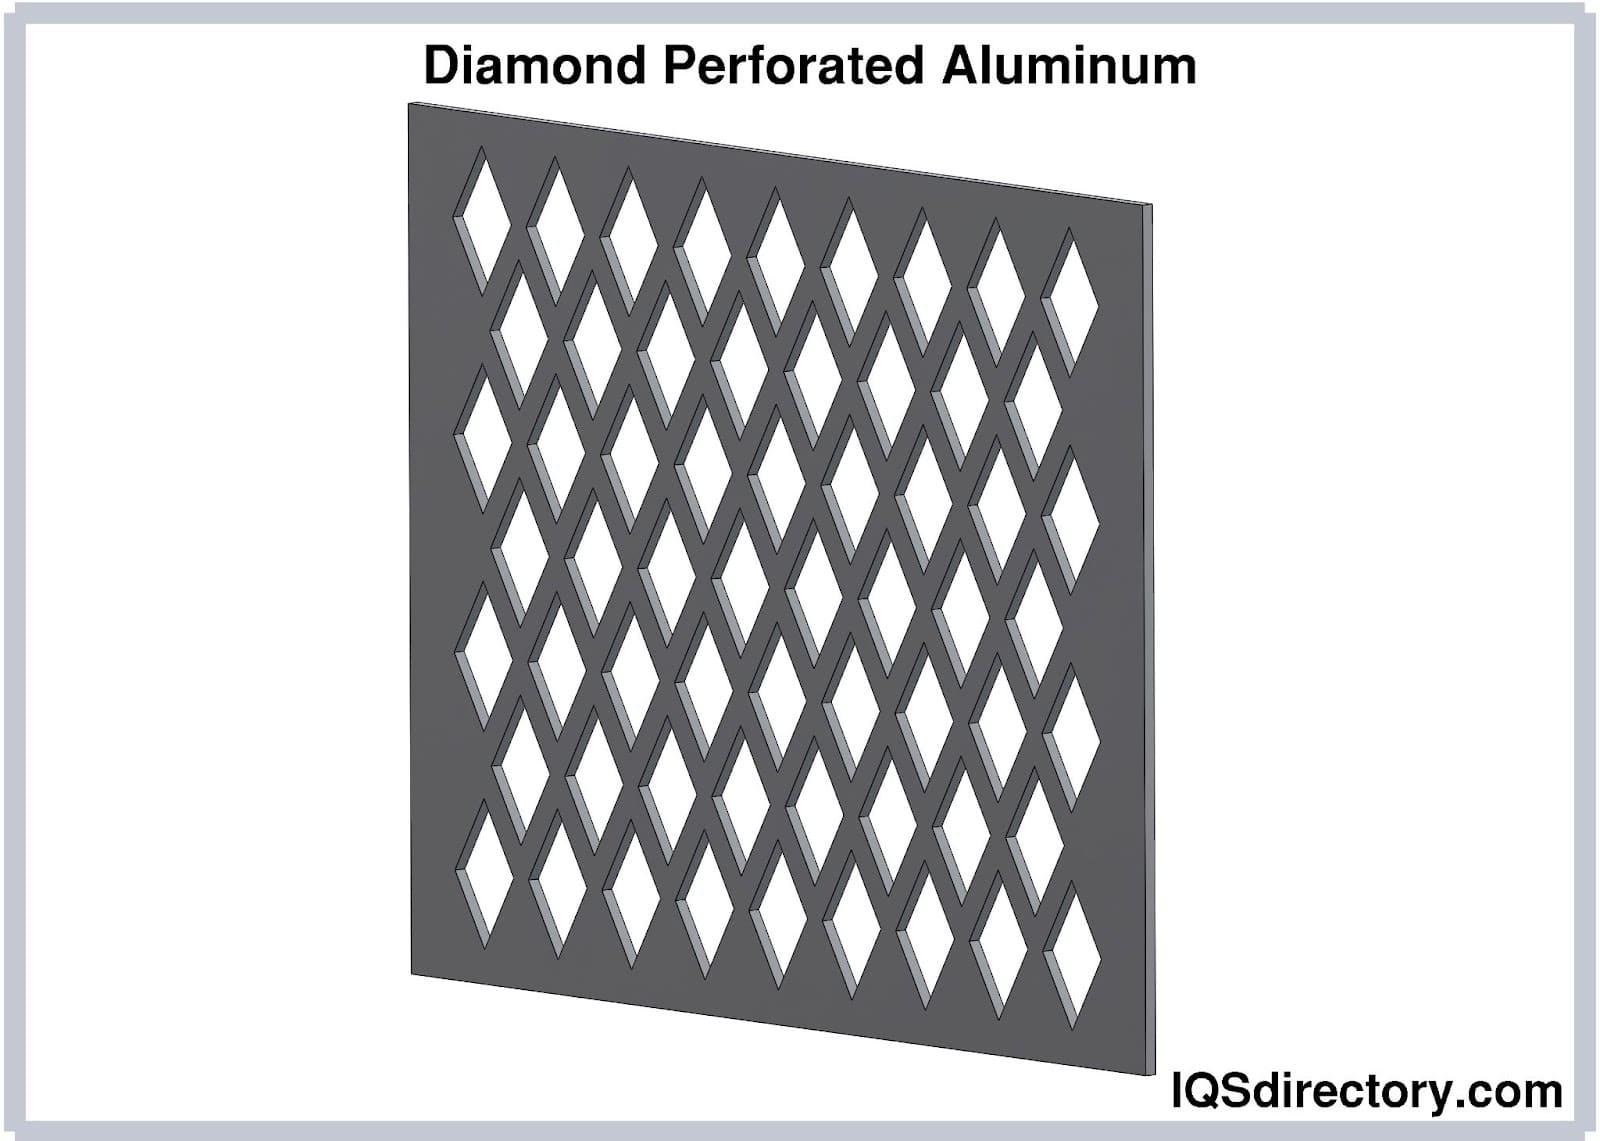 Diamond Perforated Aluminum